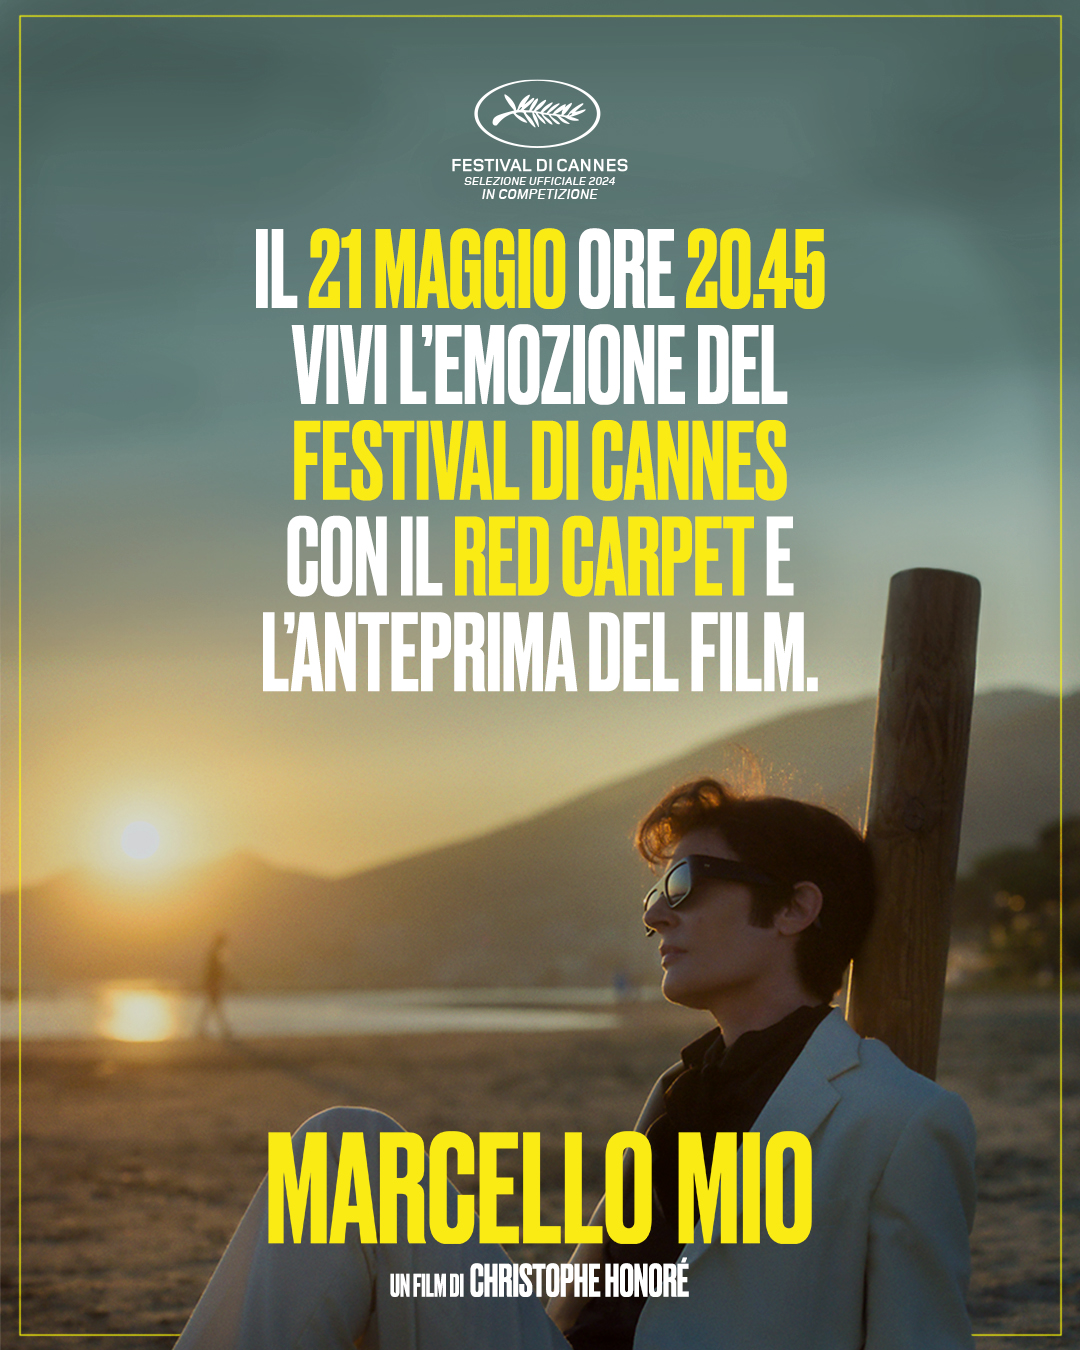 Nell’anno del centenario della nascita di Marcello Mastroianni, in Concorso a Cannes 2024 e al cinema con Lucky Red "Marcello Mio", un omaggio per esplorare i momenti più importanti della sua carriera.